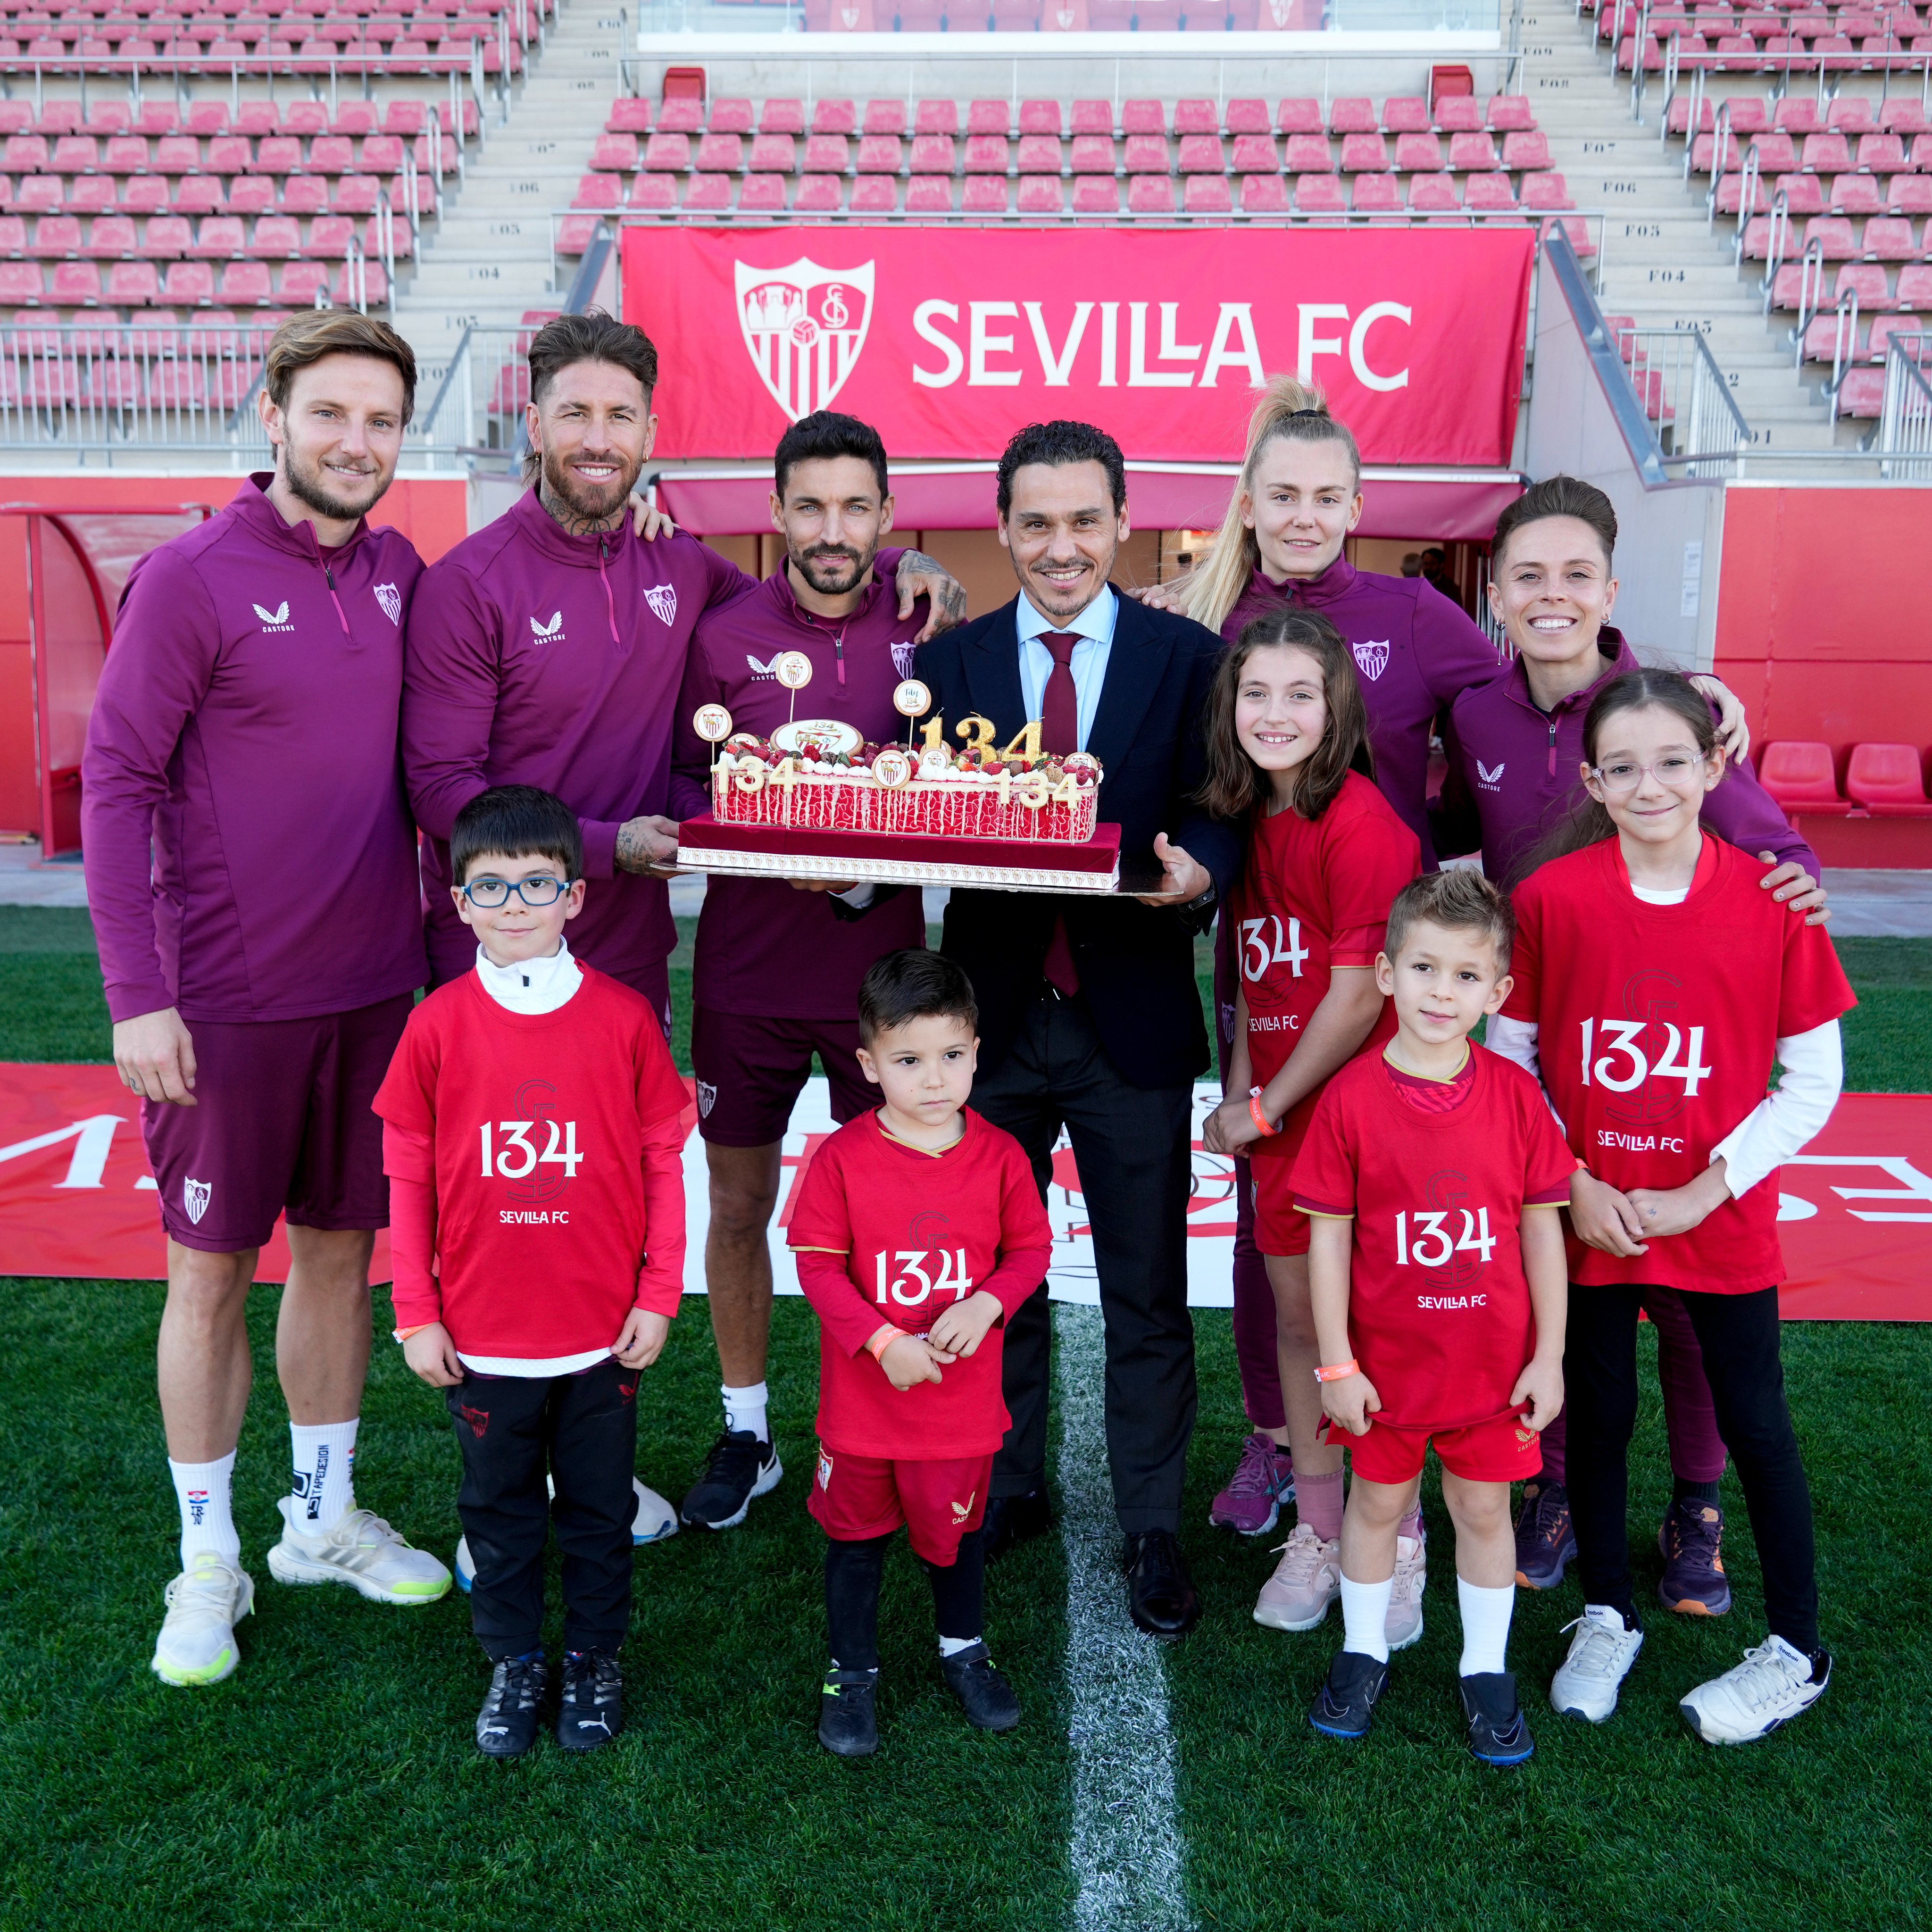 Sevilla Fútbol Club on X: 𝑭𝒂𝒎𝒊𝒍𝒊𝒂 𝒓𝒐𝒋𝒂 𝒚 𝒃𝒍𝒂𝒏𝒄𝒂 𝒅𝒆𝒍  𝑺á𝒏𝒄𝒉𝒆𝒛-𝑷𝒊𝒛𝒋𝒖á𝒏 🎂❤️  / X